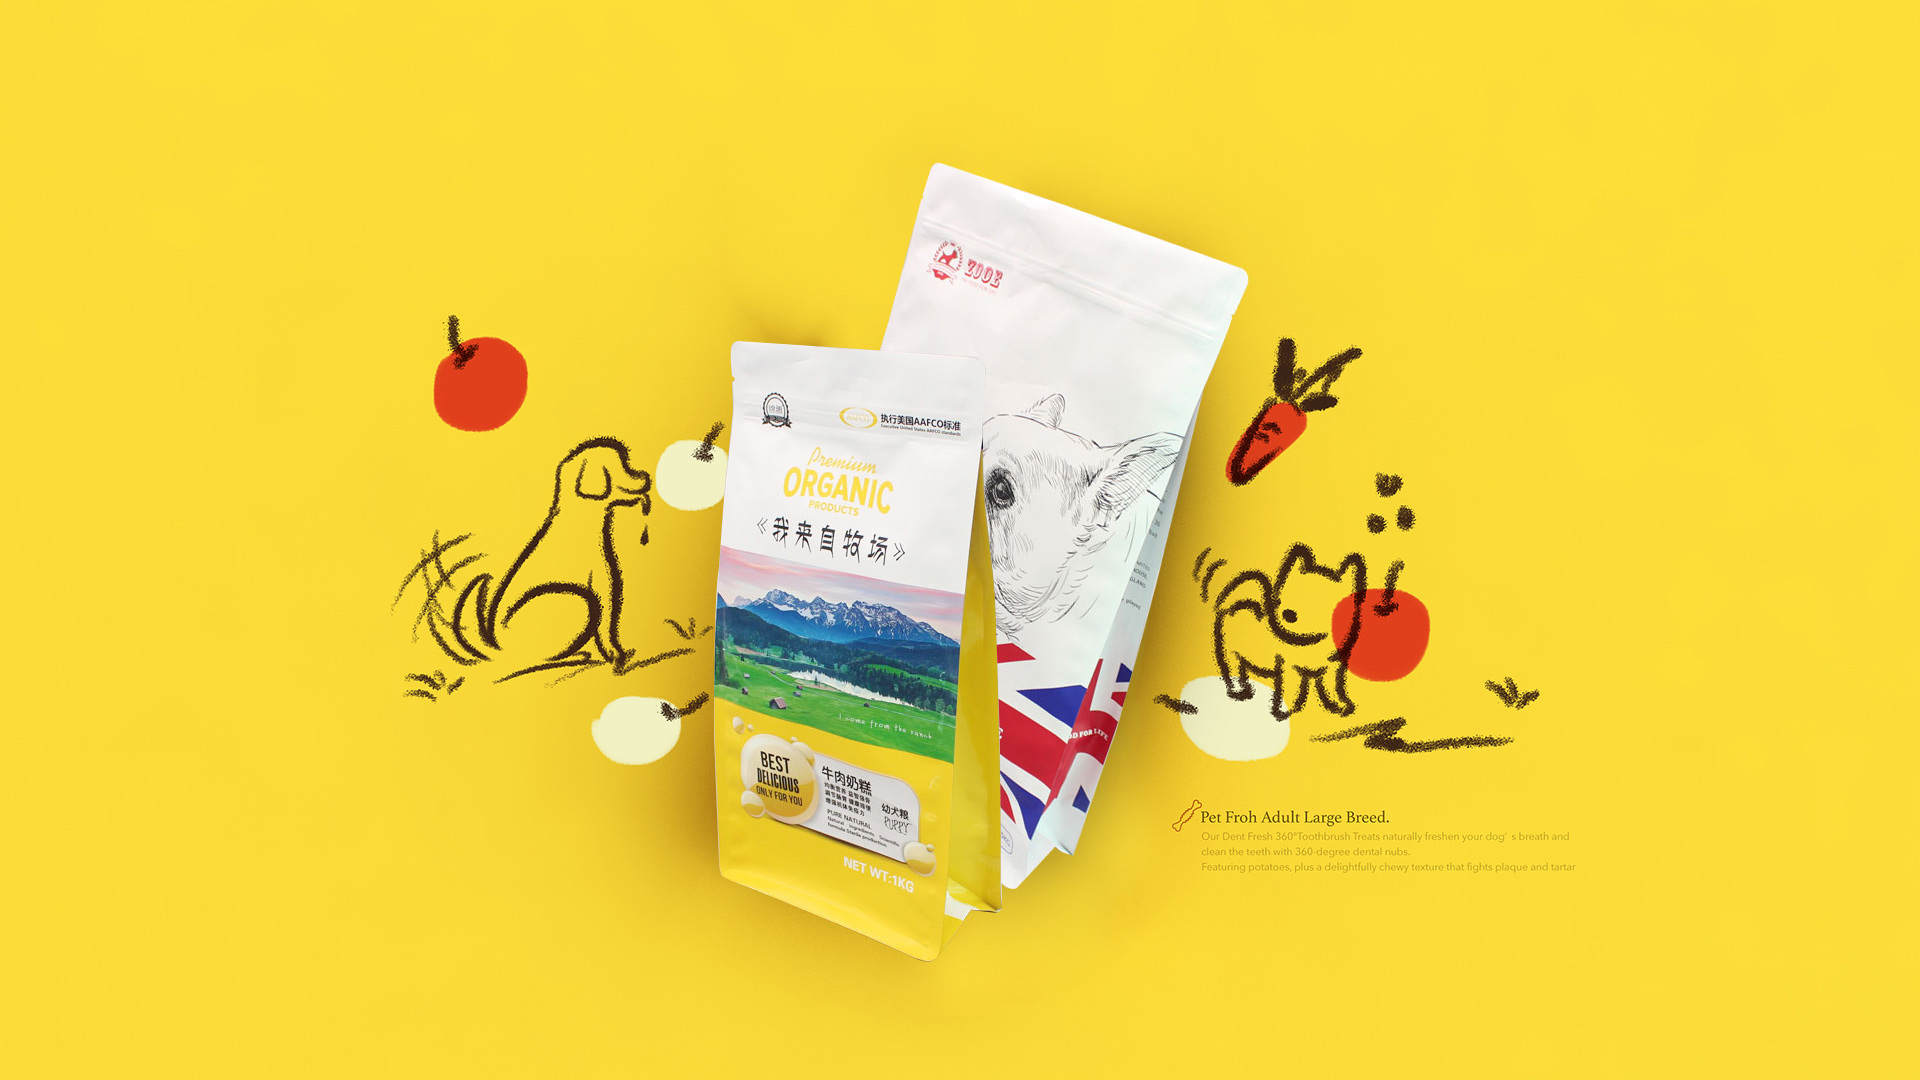 Dragon Packaging - Focus on pet food packaging trustworthy